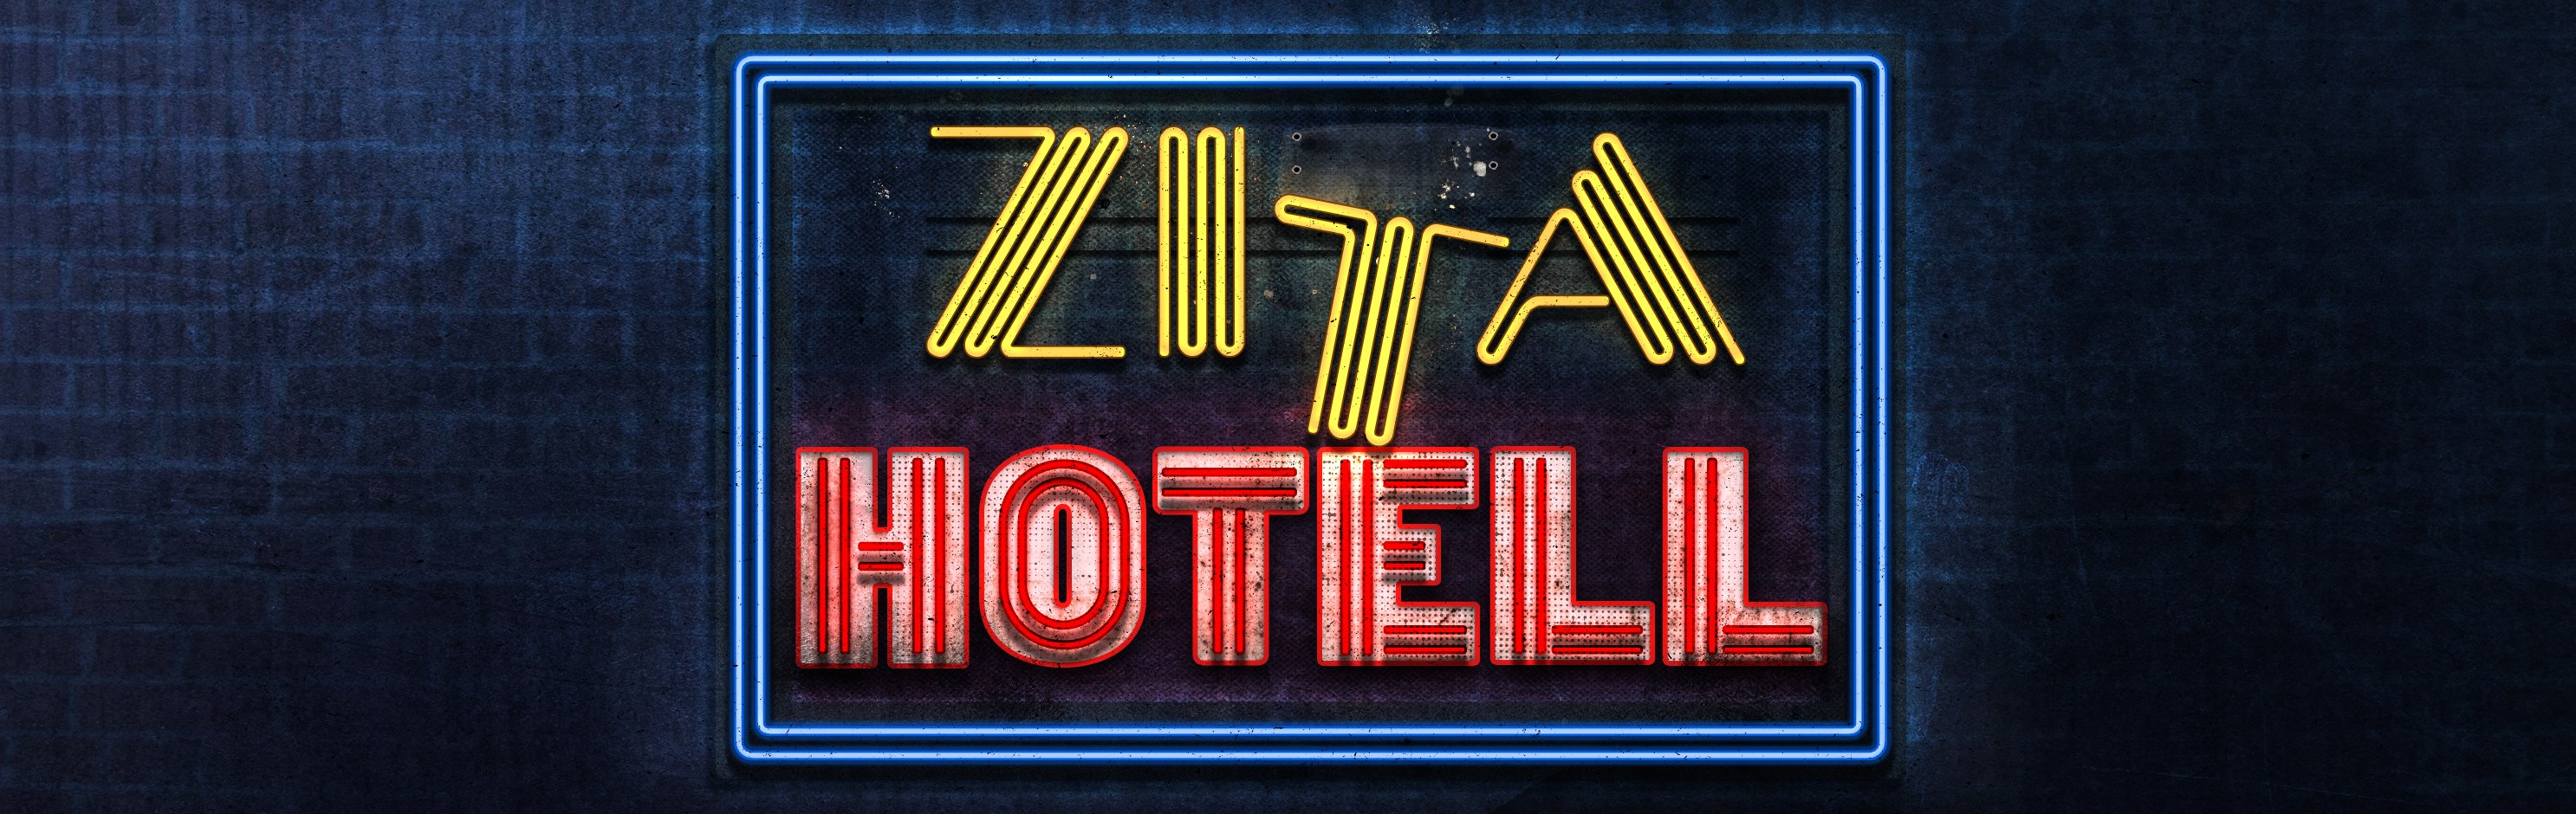 banner_zita-hotell